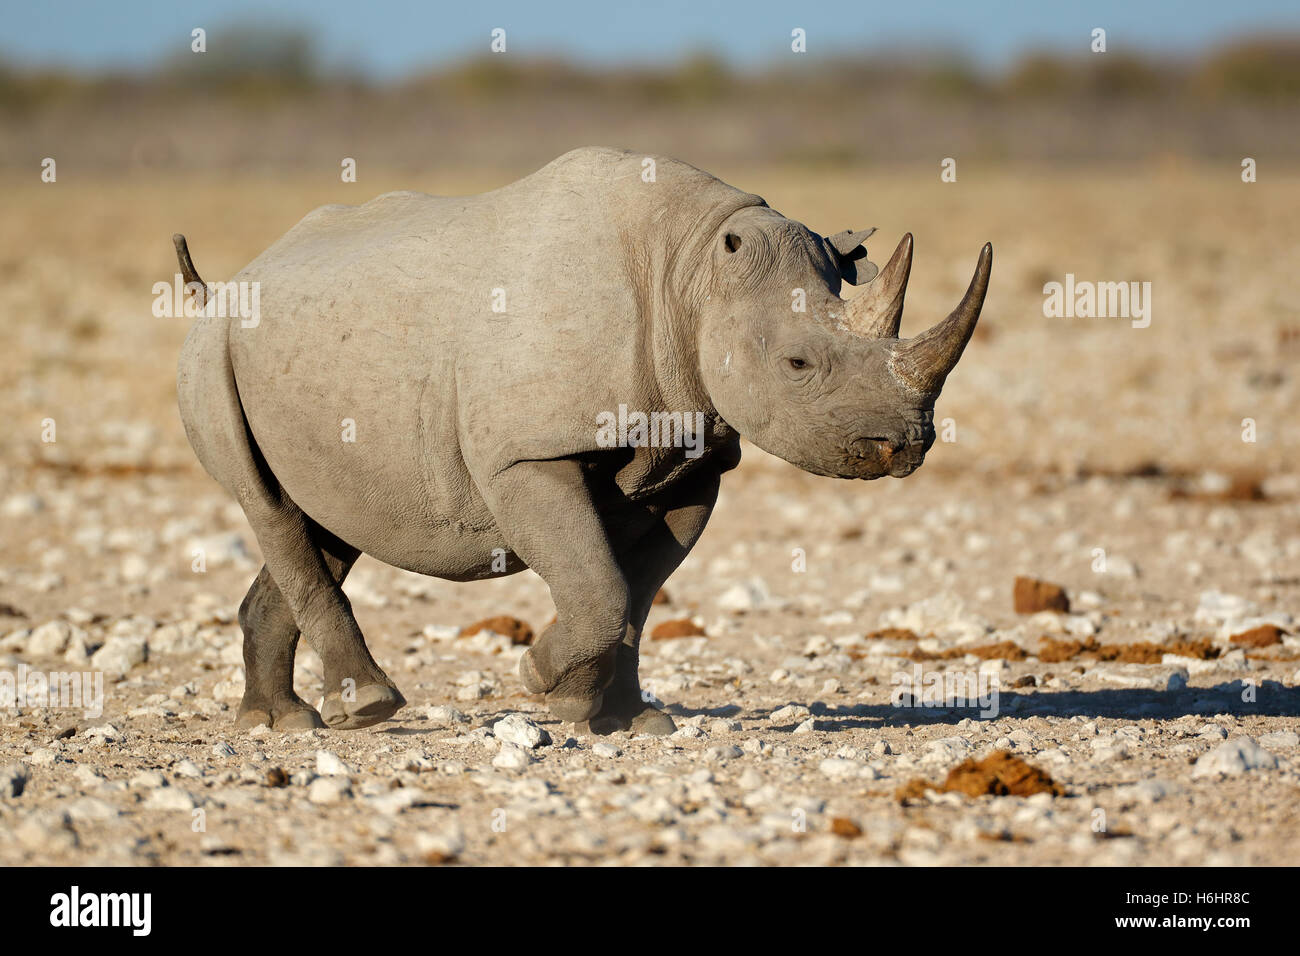 Un rhinocéros noir (Diceros bicornis) dans l'habitat naturel, Etosha National Park, Namibie Banque D'Images